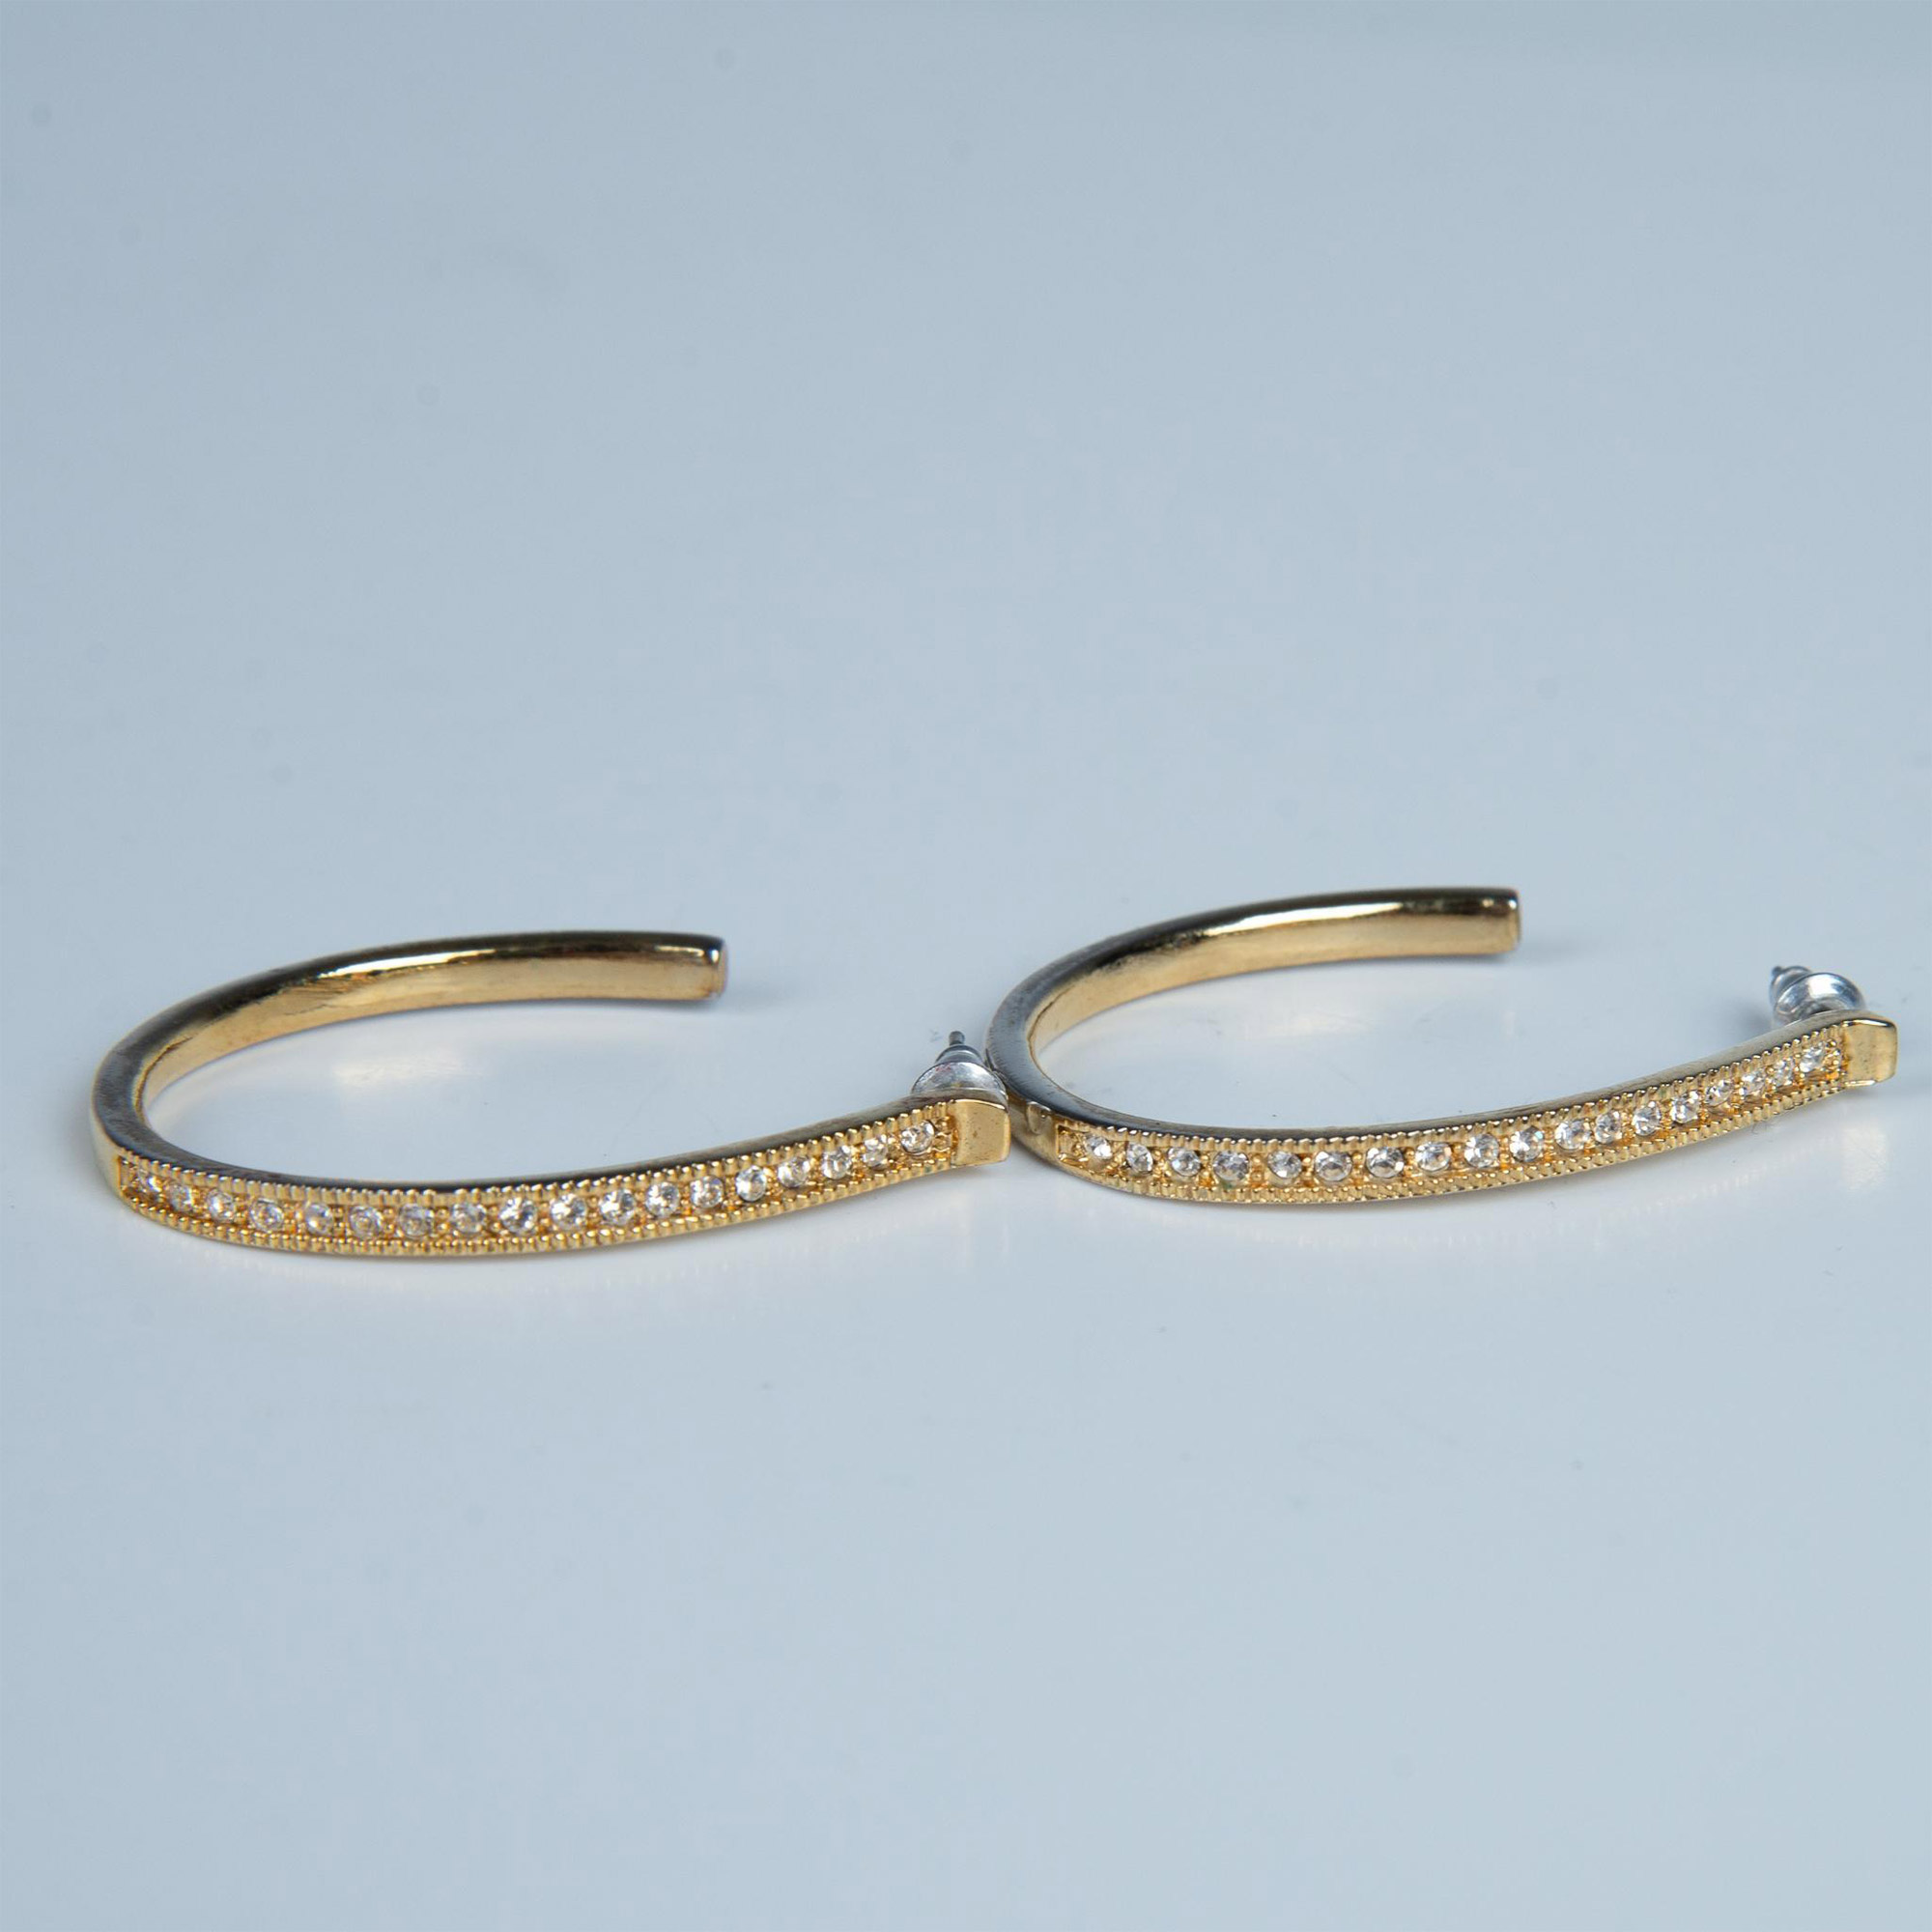 Chic Gold Metal & Crystal J-Hoop Earrings - Image 4 of 5